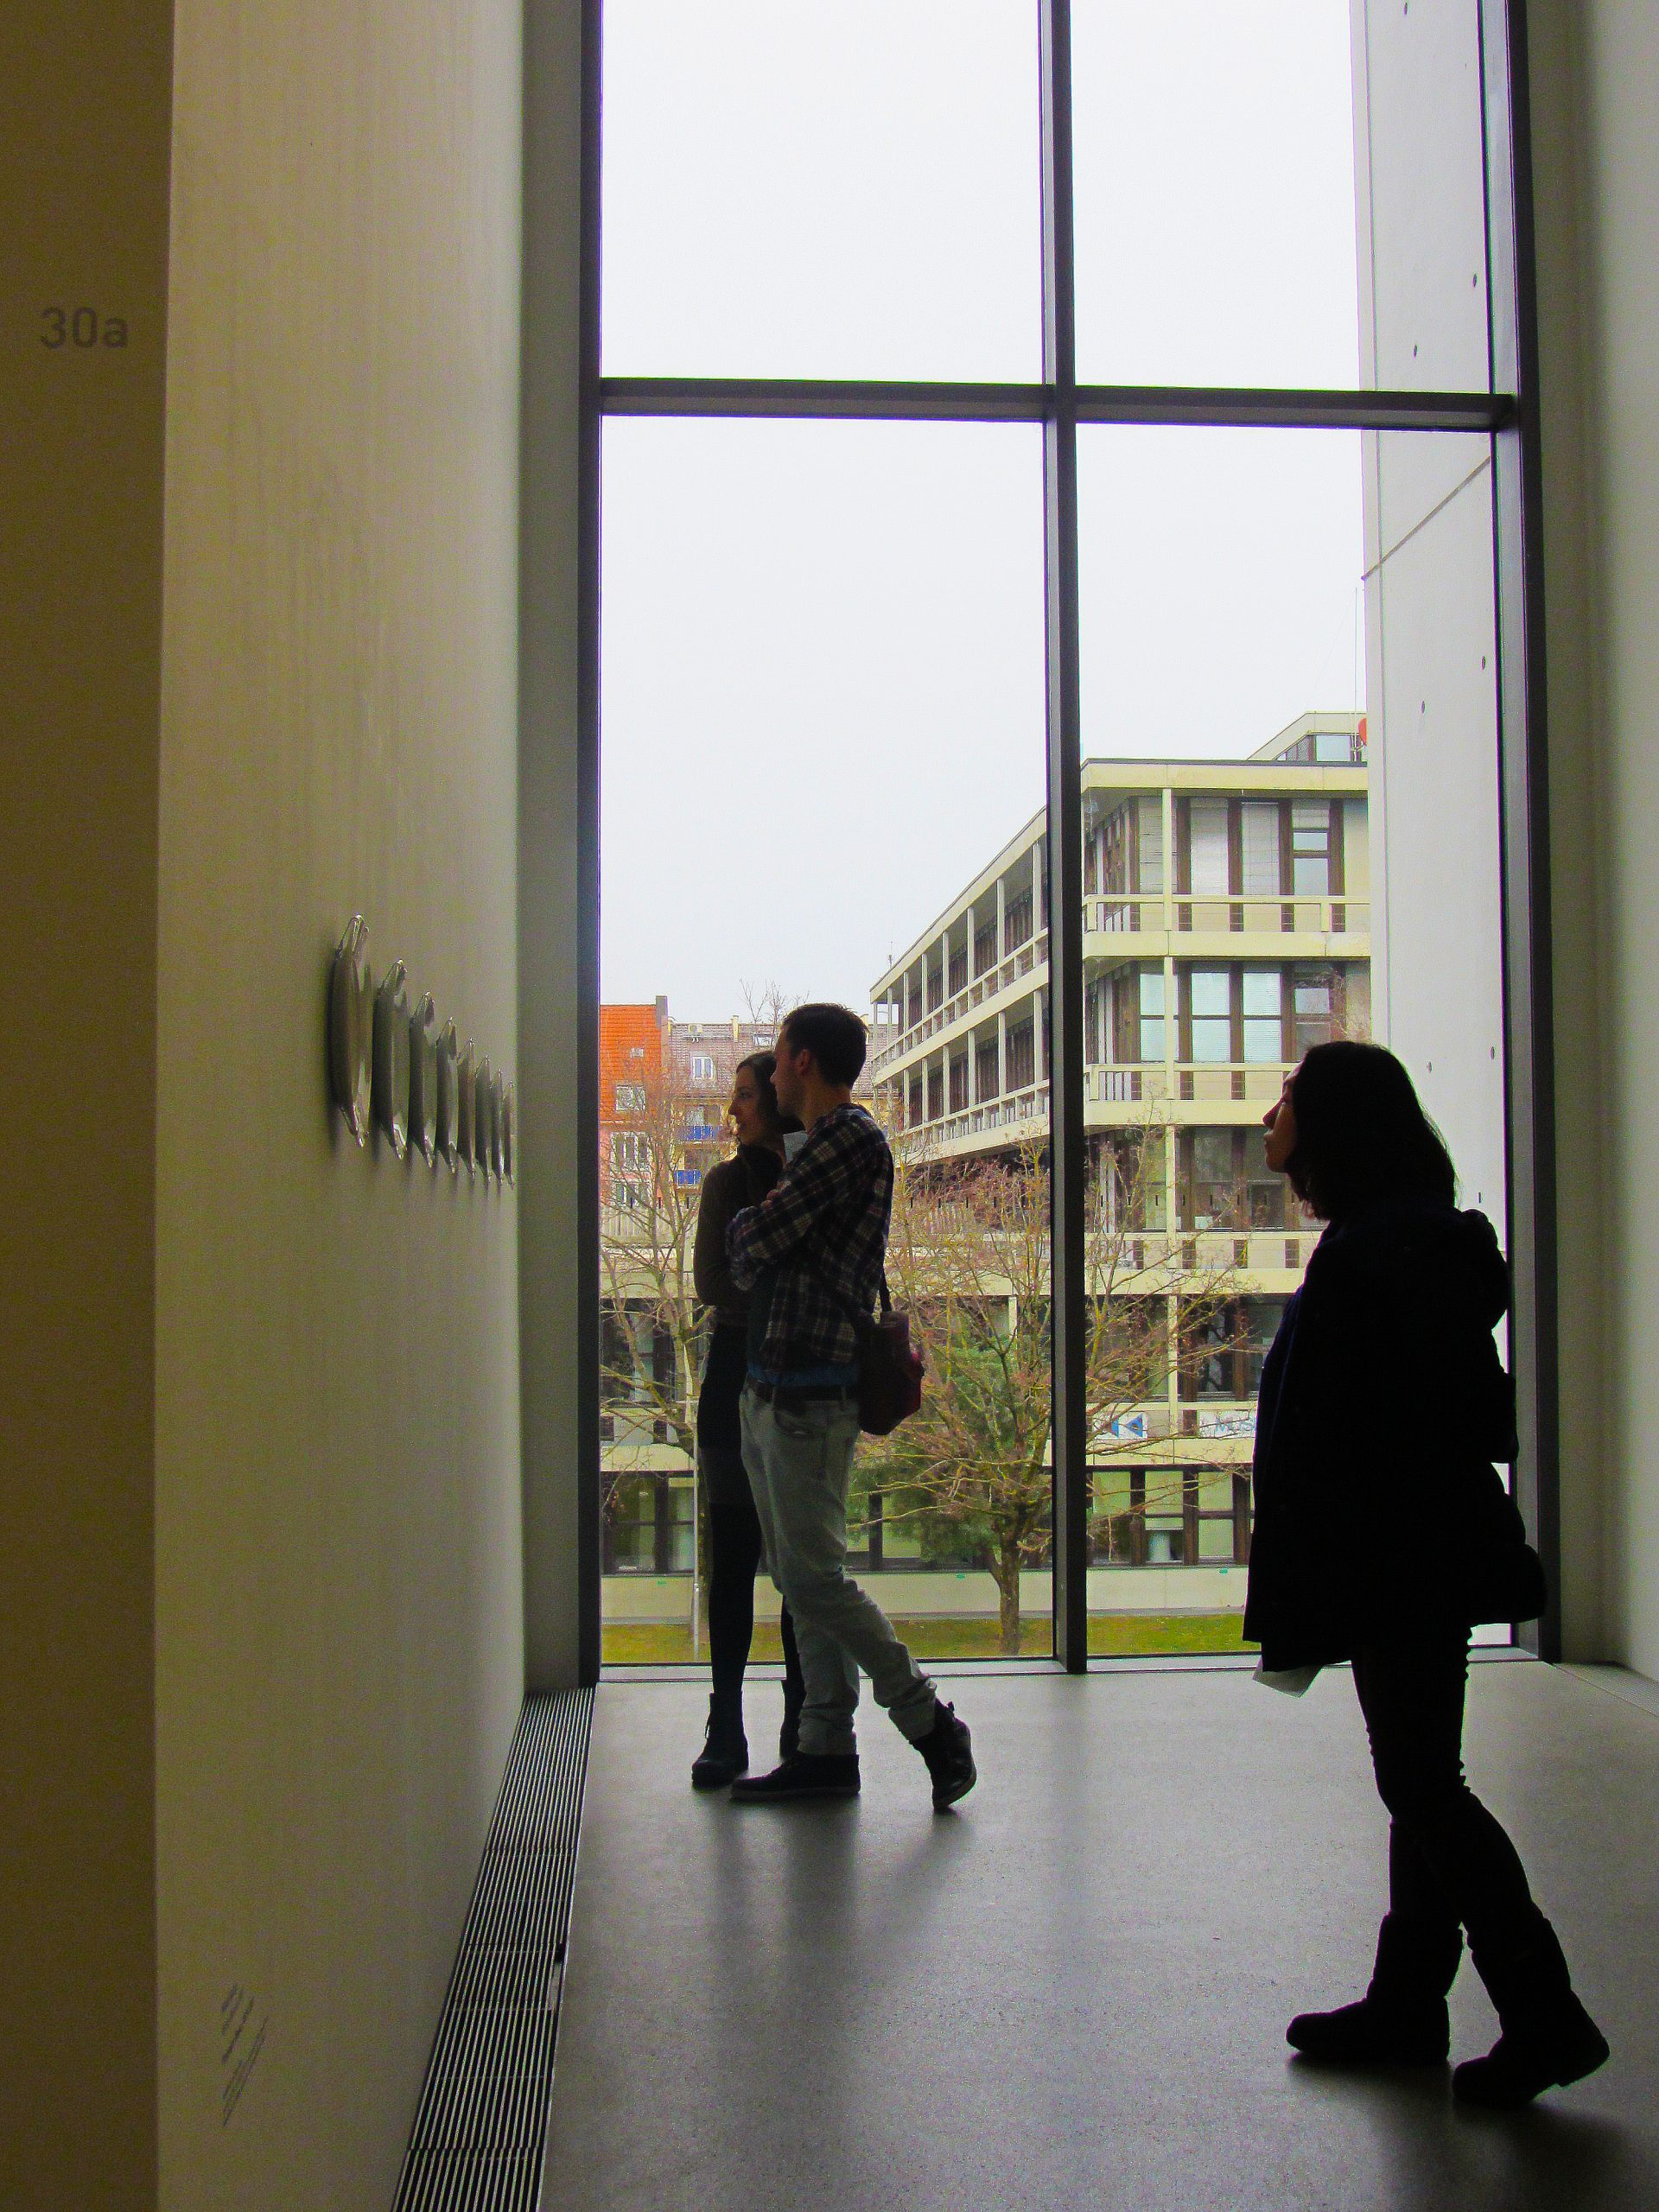 Enjoying the Pinakothek der Moderne museum.